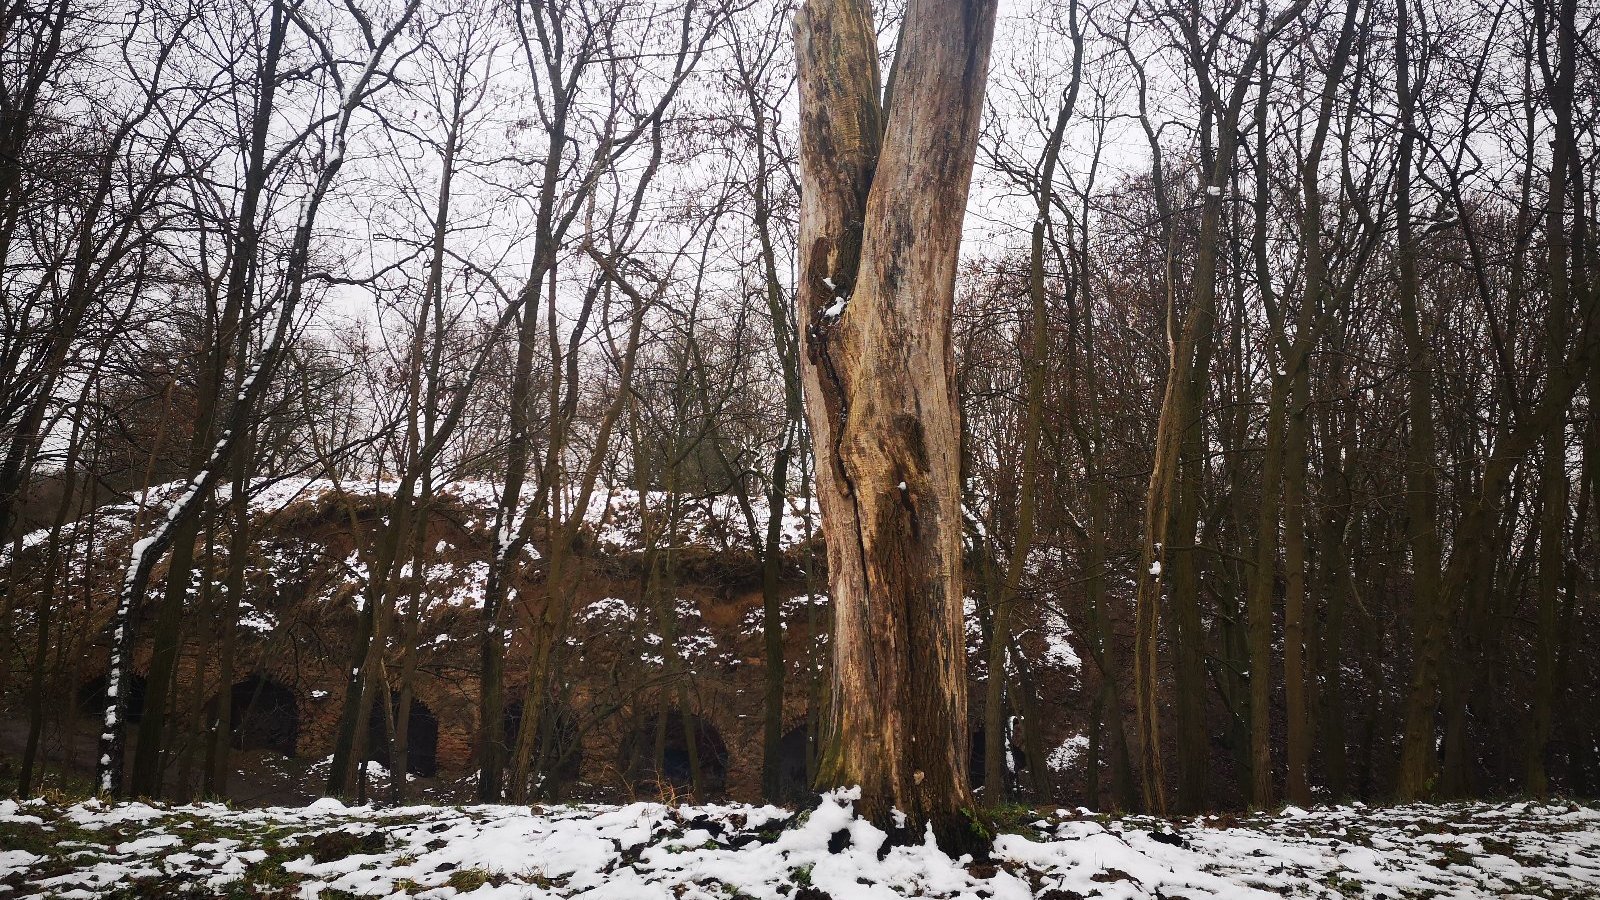 Świadki to pozostałości po drzewie w postaci pnia z obciętą koroną